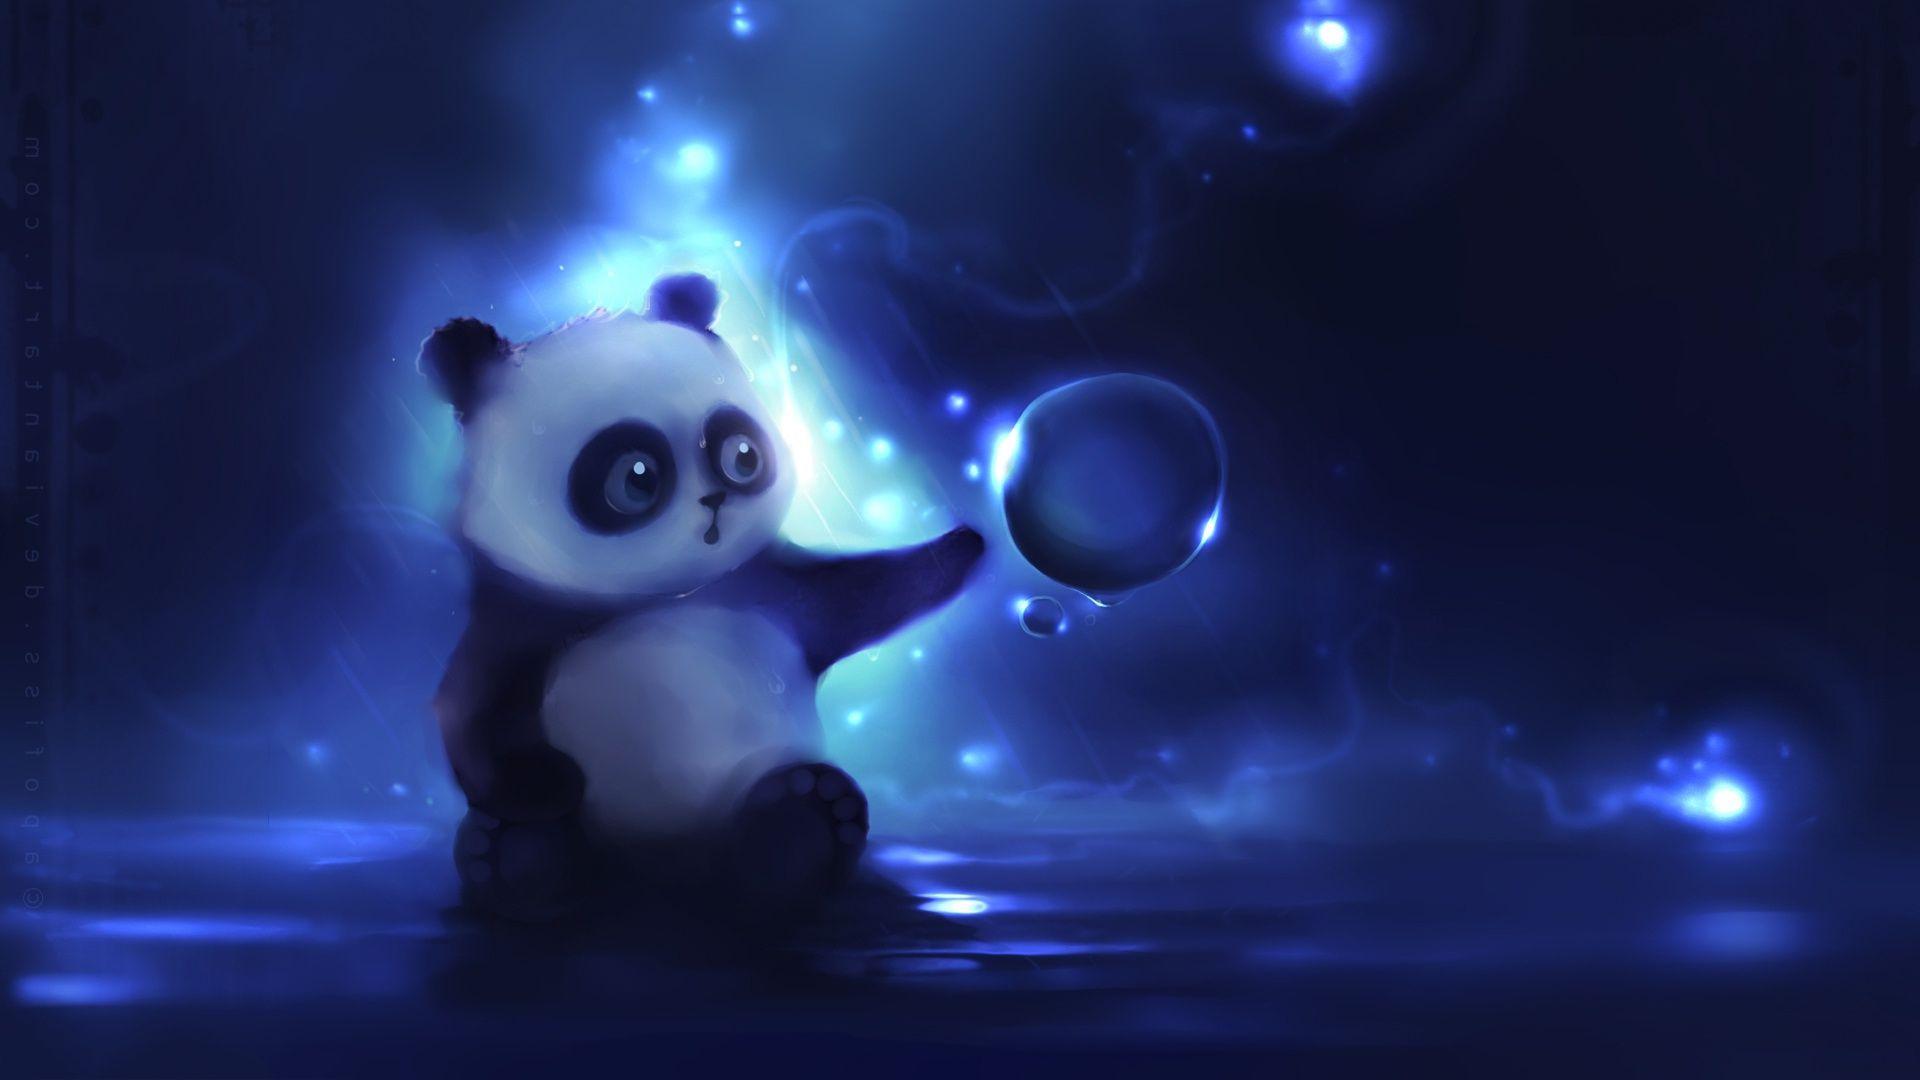 Cute Anime Panda Wallpaper Free Cute Anime Panda